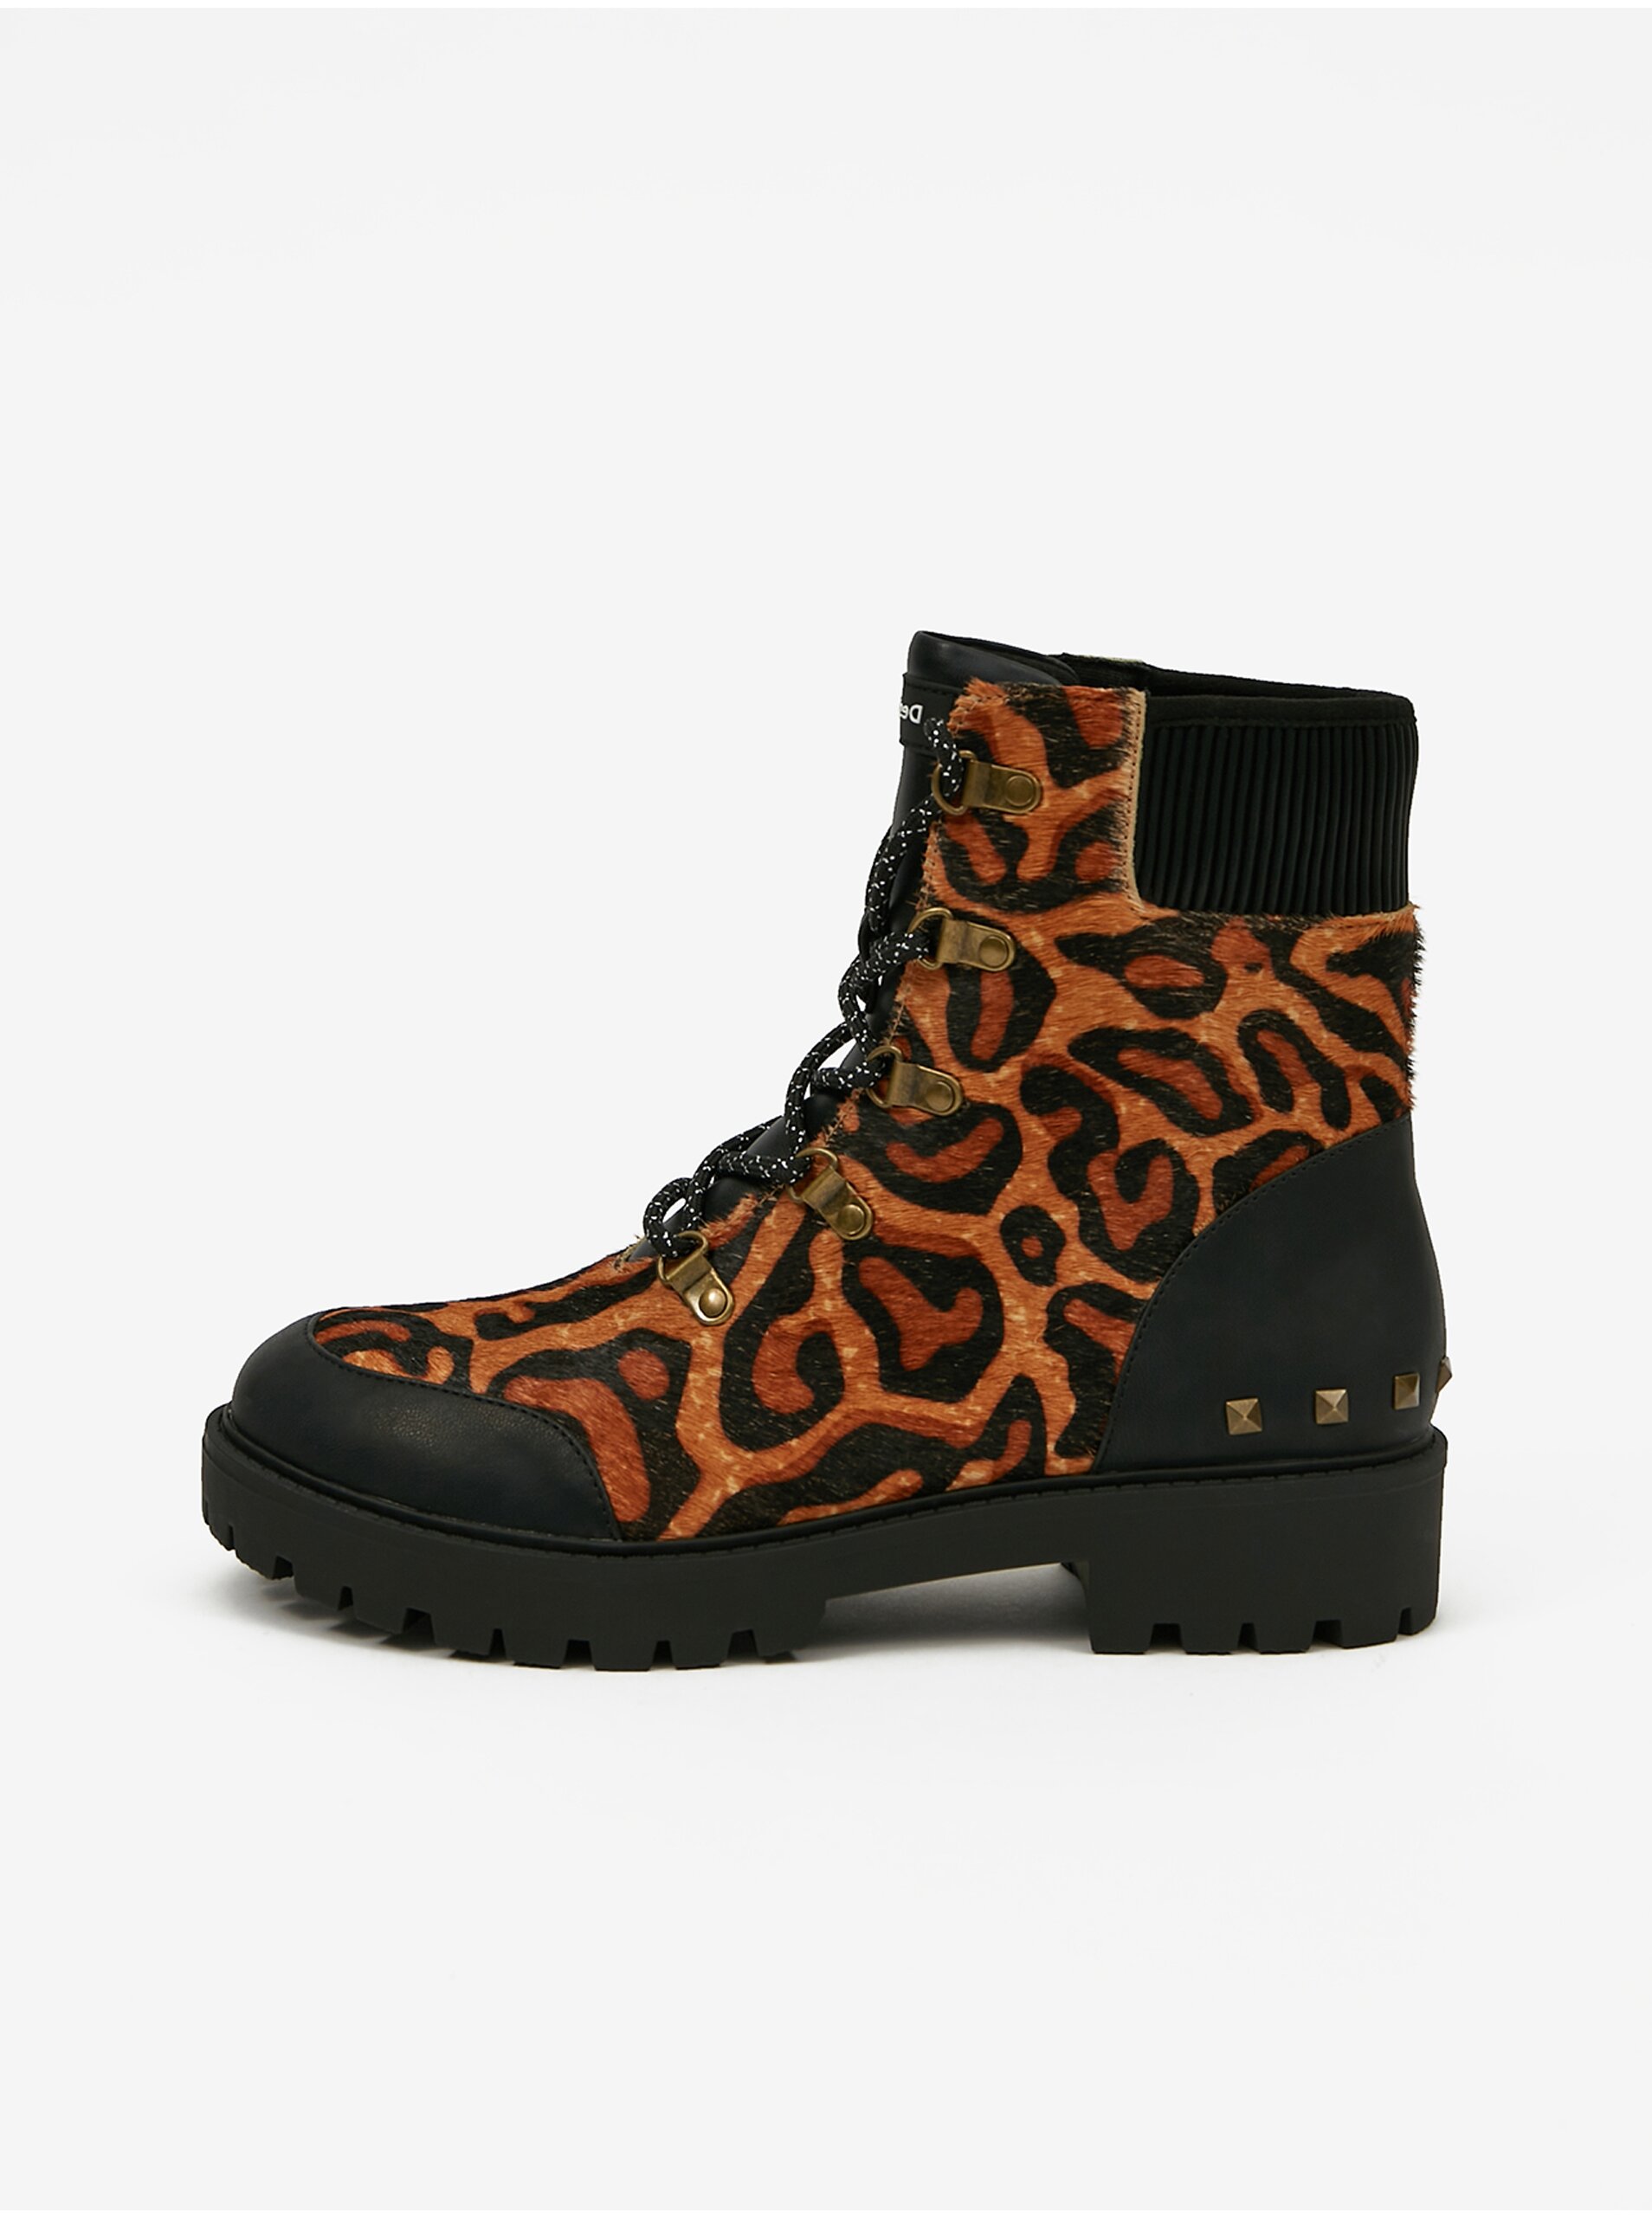 E-shop Hnědé dámské kožené kotníkové boty s leopardím vzorem Desigual Biker Leopard